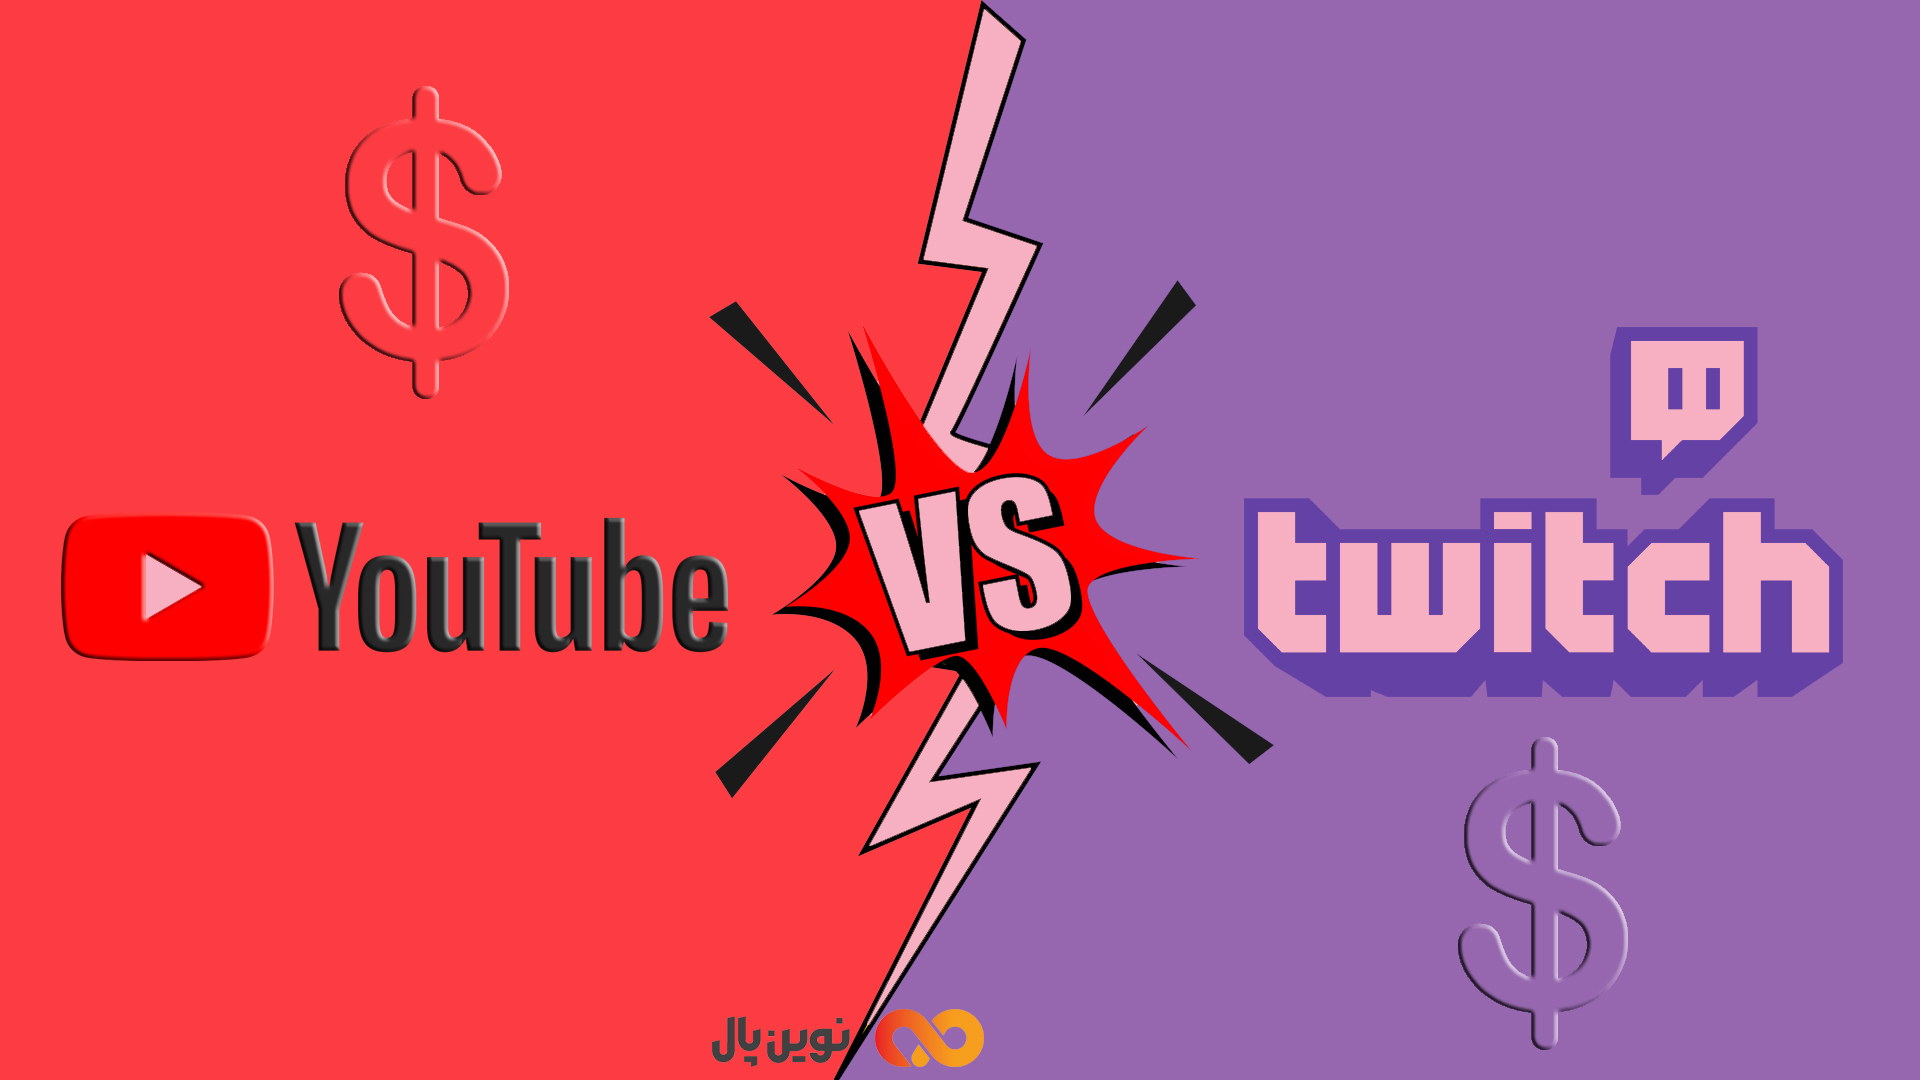 توییچ یا یوتیوب؛ کدام پولسازتر است؟